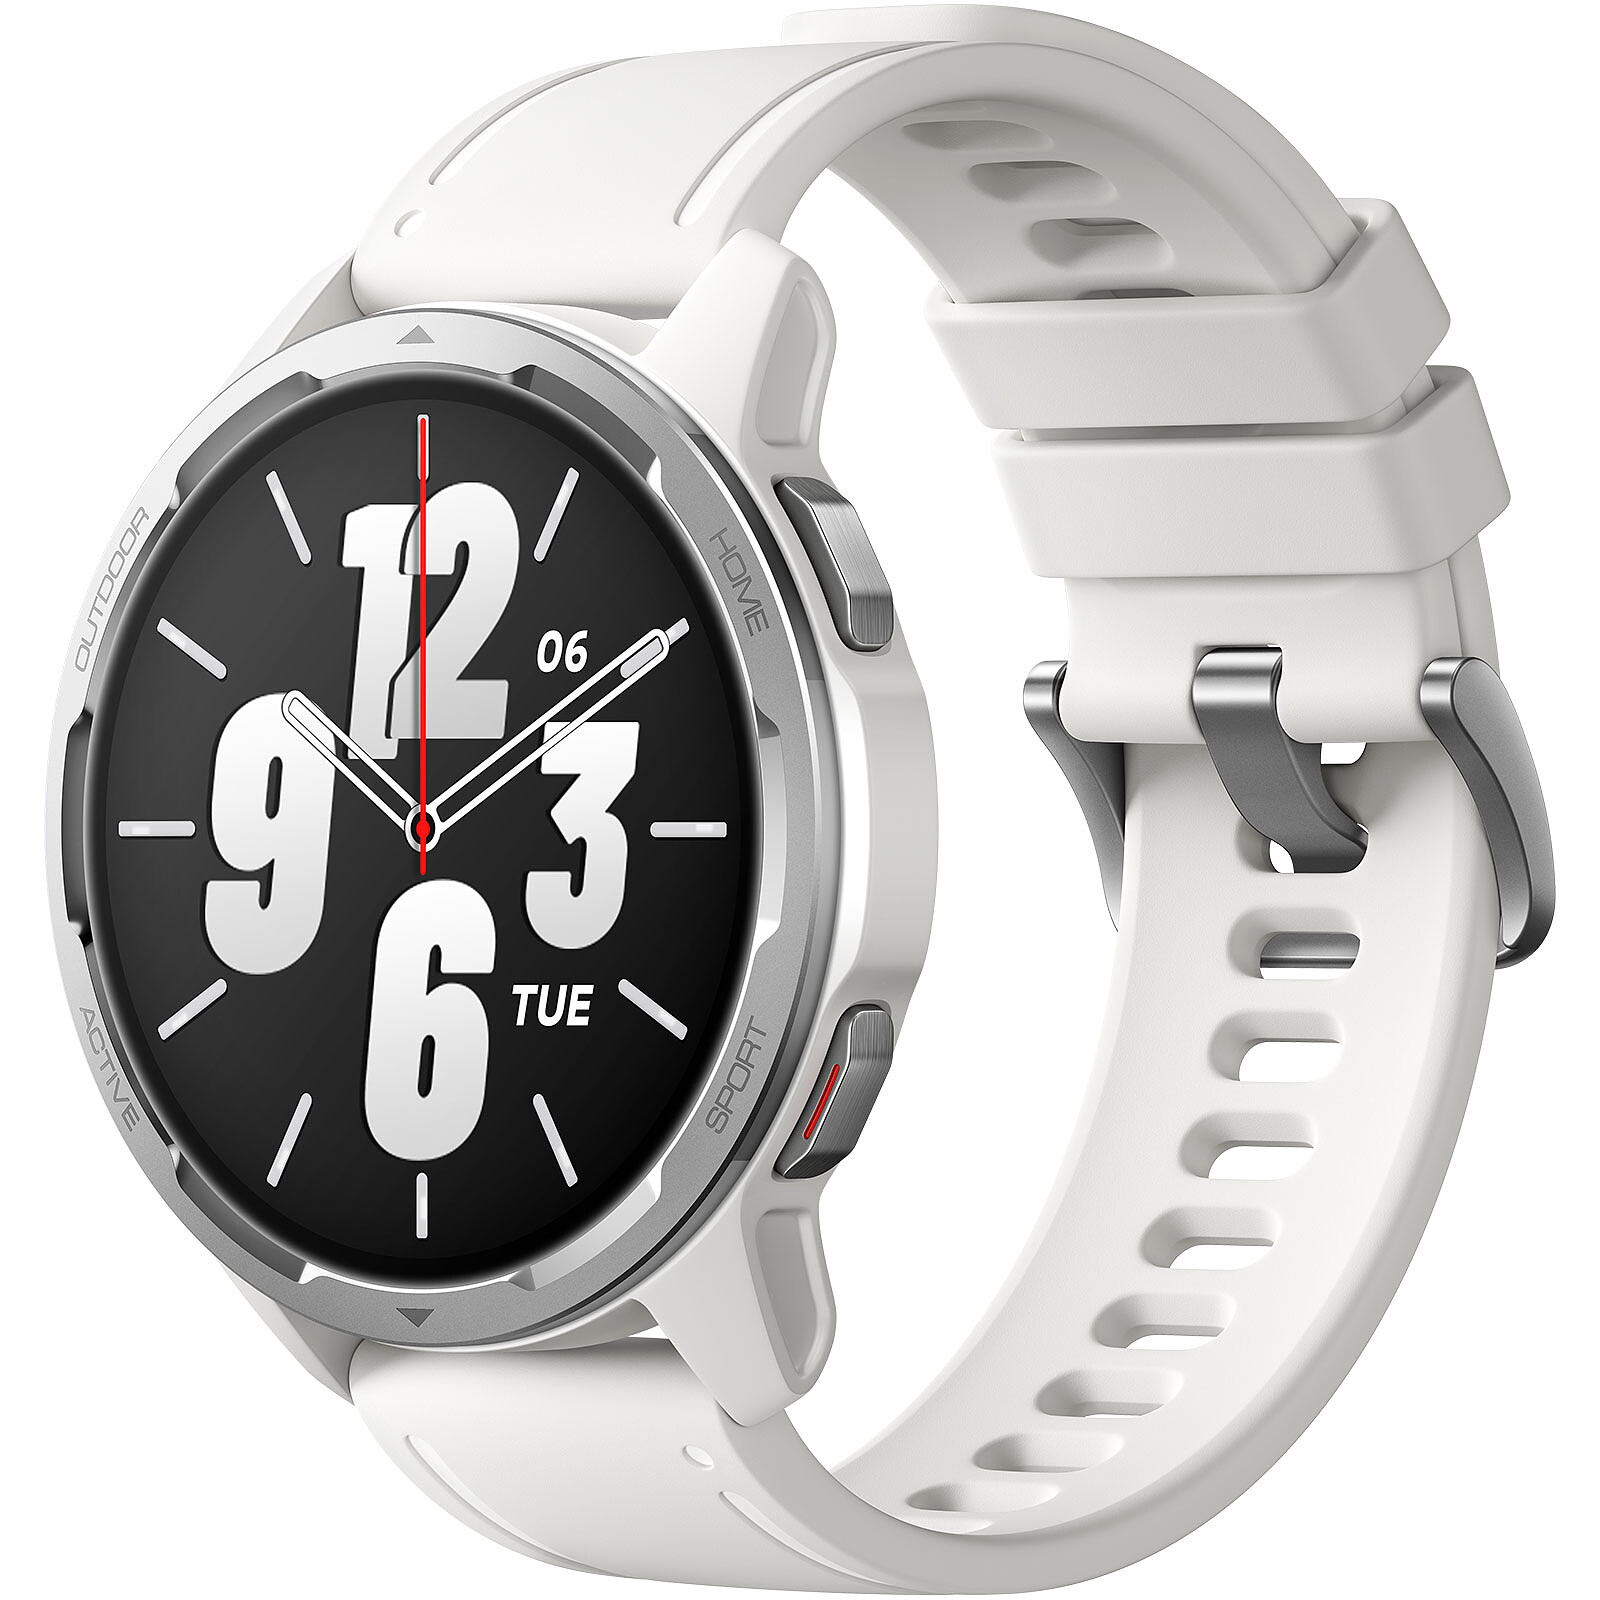 Xiaomi Watch S1 Black Wifi + Bluetooth Smartwatch NEW